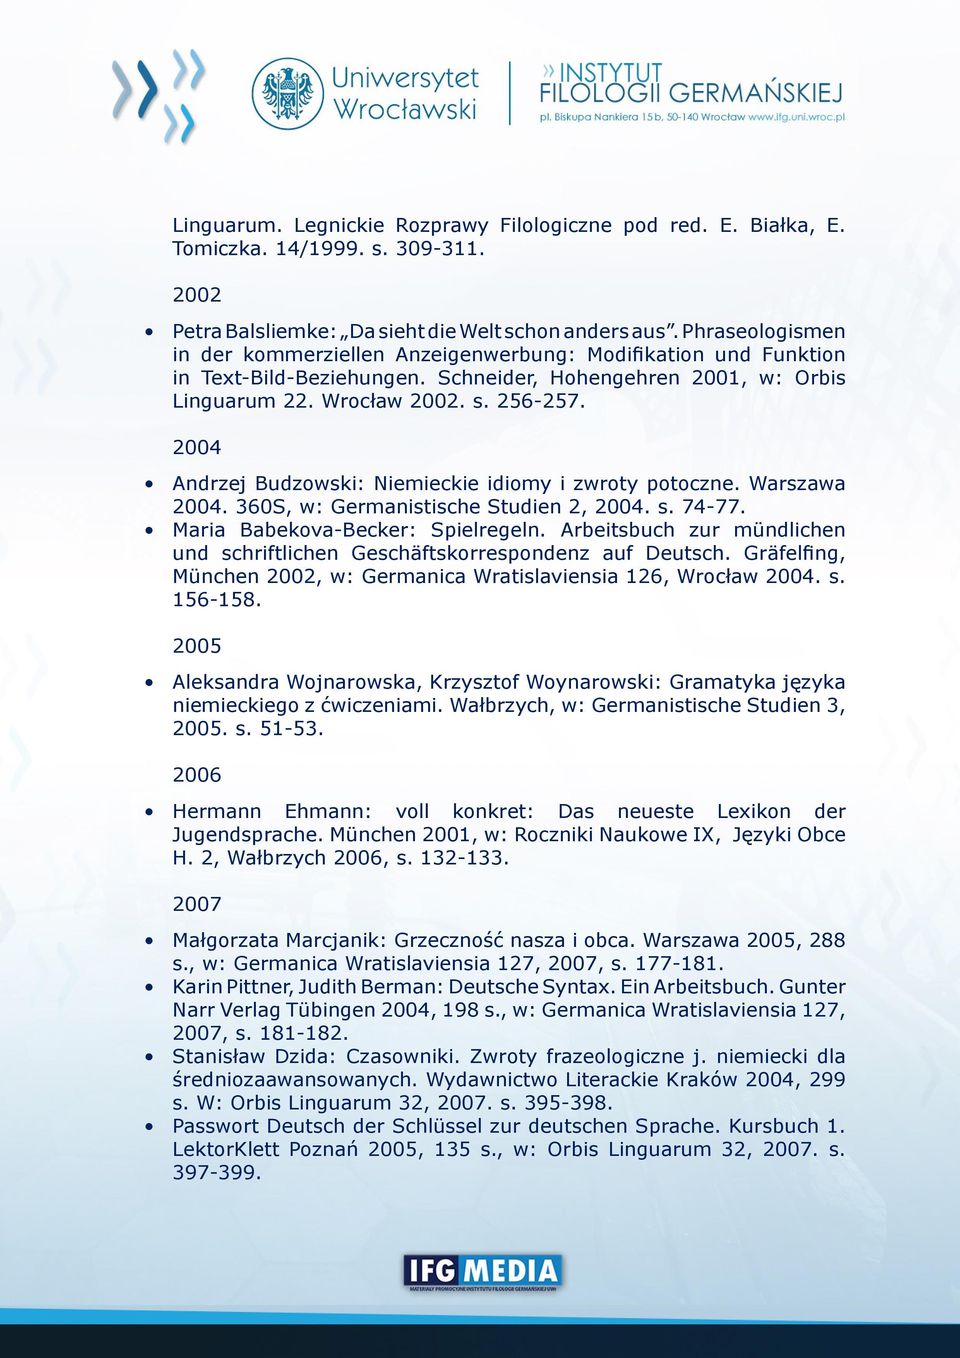 2004 Andrzej Budzowski: Niemieckie idiomy i zwroty potoczne. Warszawa 2004. 360S, w: Germanistische Studien 2, 2004. s. 74-77. Maria Babekova-Becker: Spielregeln.